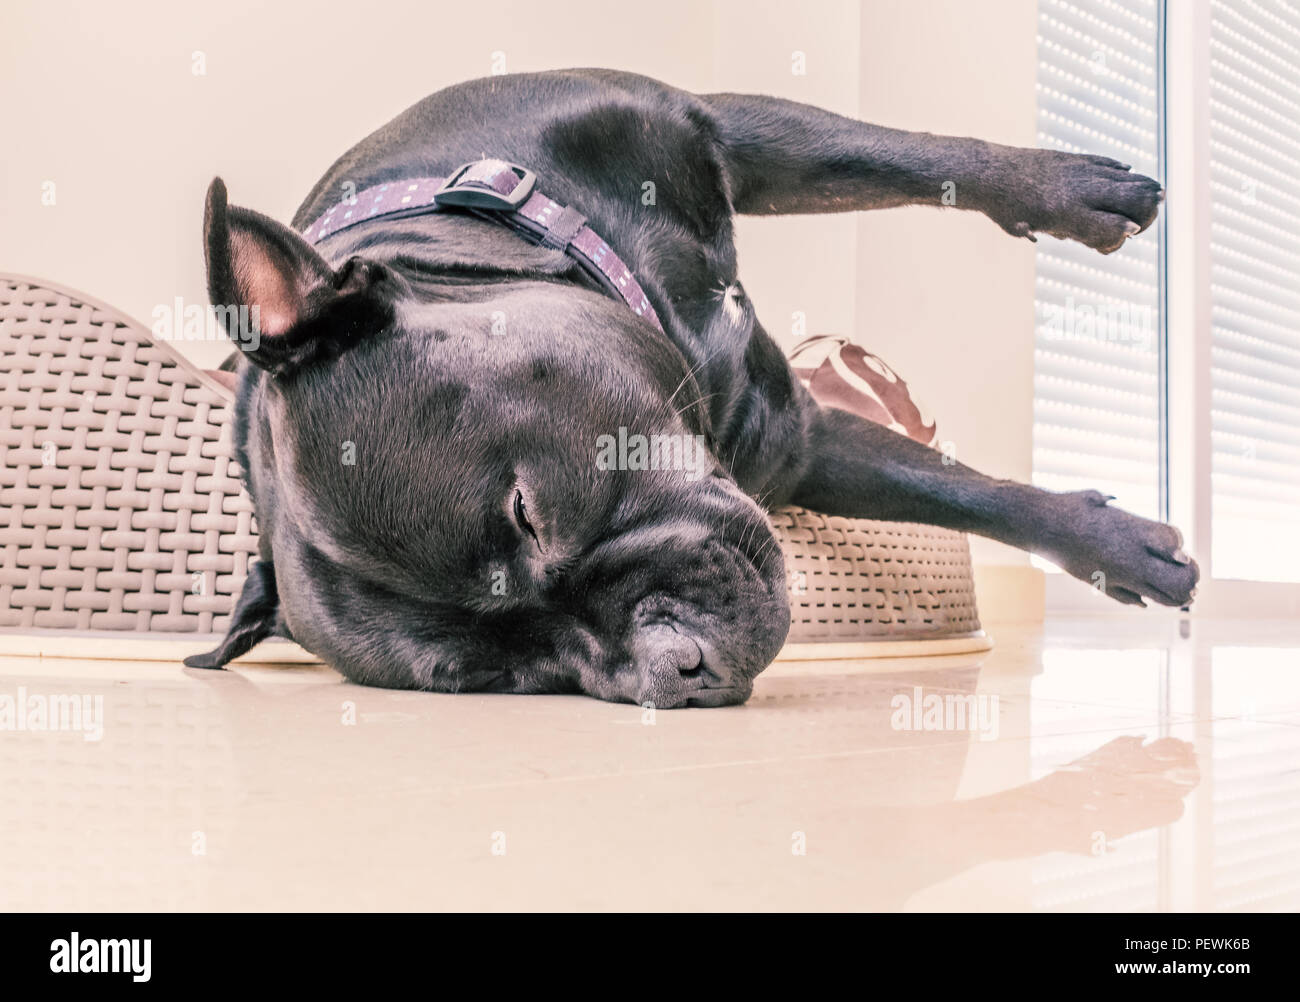 Chien staffordshire bull terrier noir endormi dans un lit en plastique avec coussin. Sa tête est accrochée sur le bord du lit dans ce qui ressemble à une situation délicate Banque D'Images